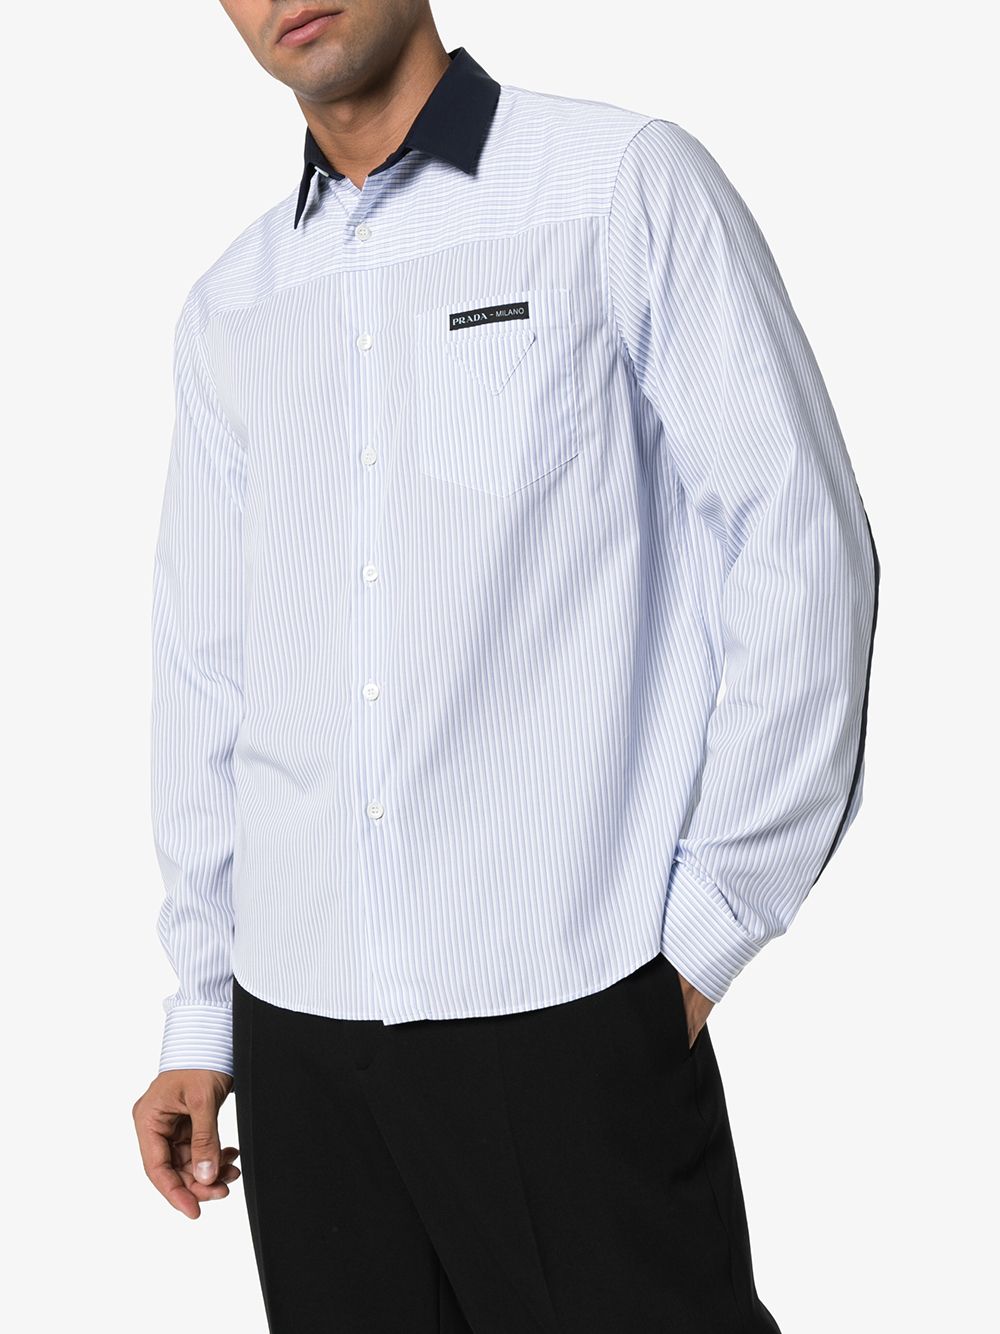 фото Prada полосатая рубашка с контрастным воротником